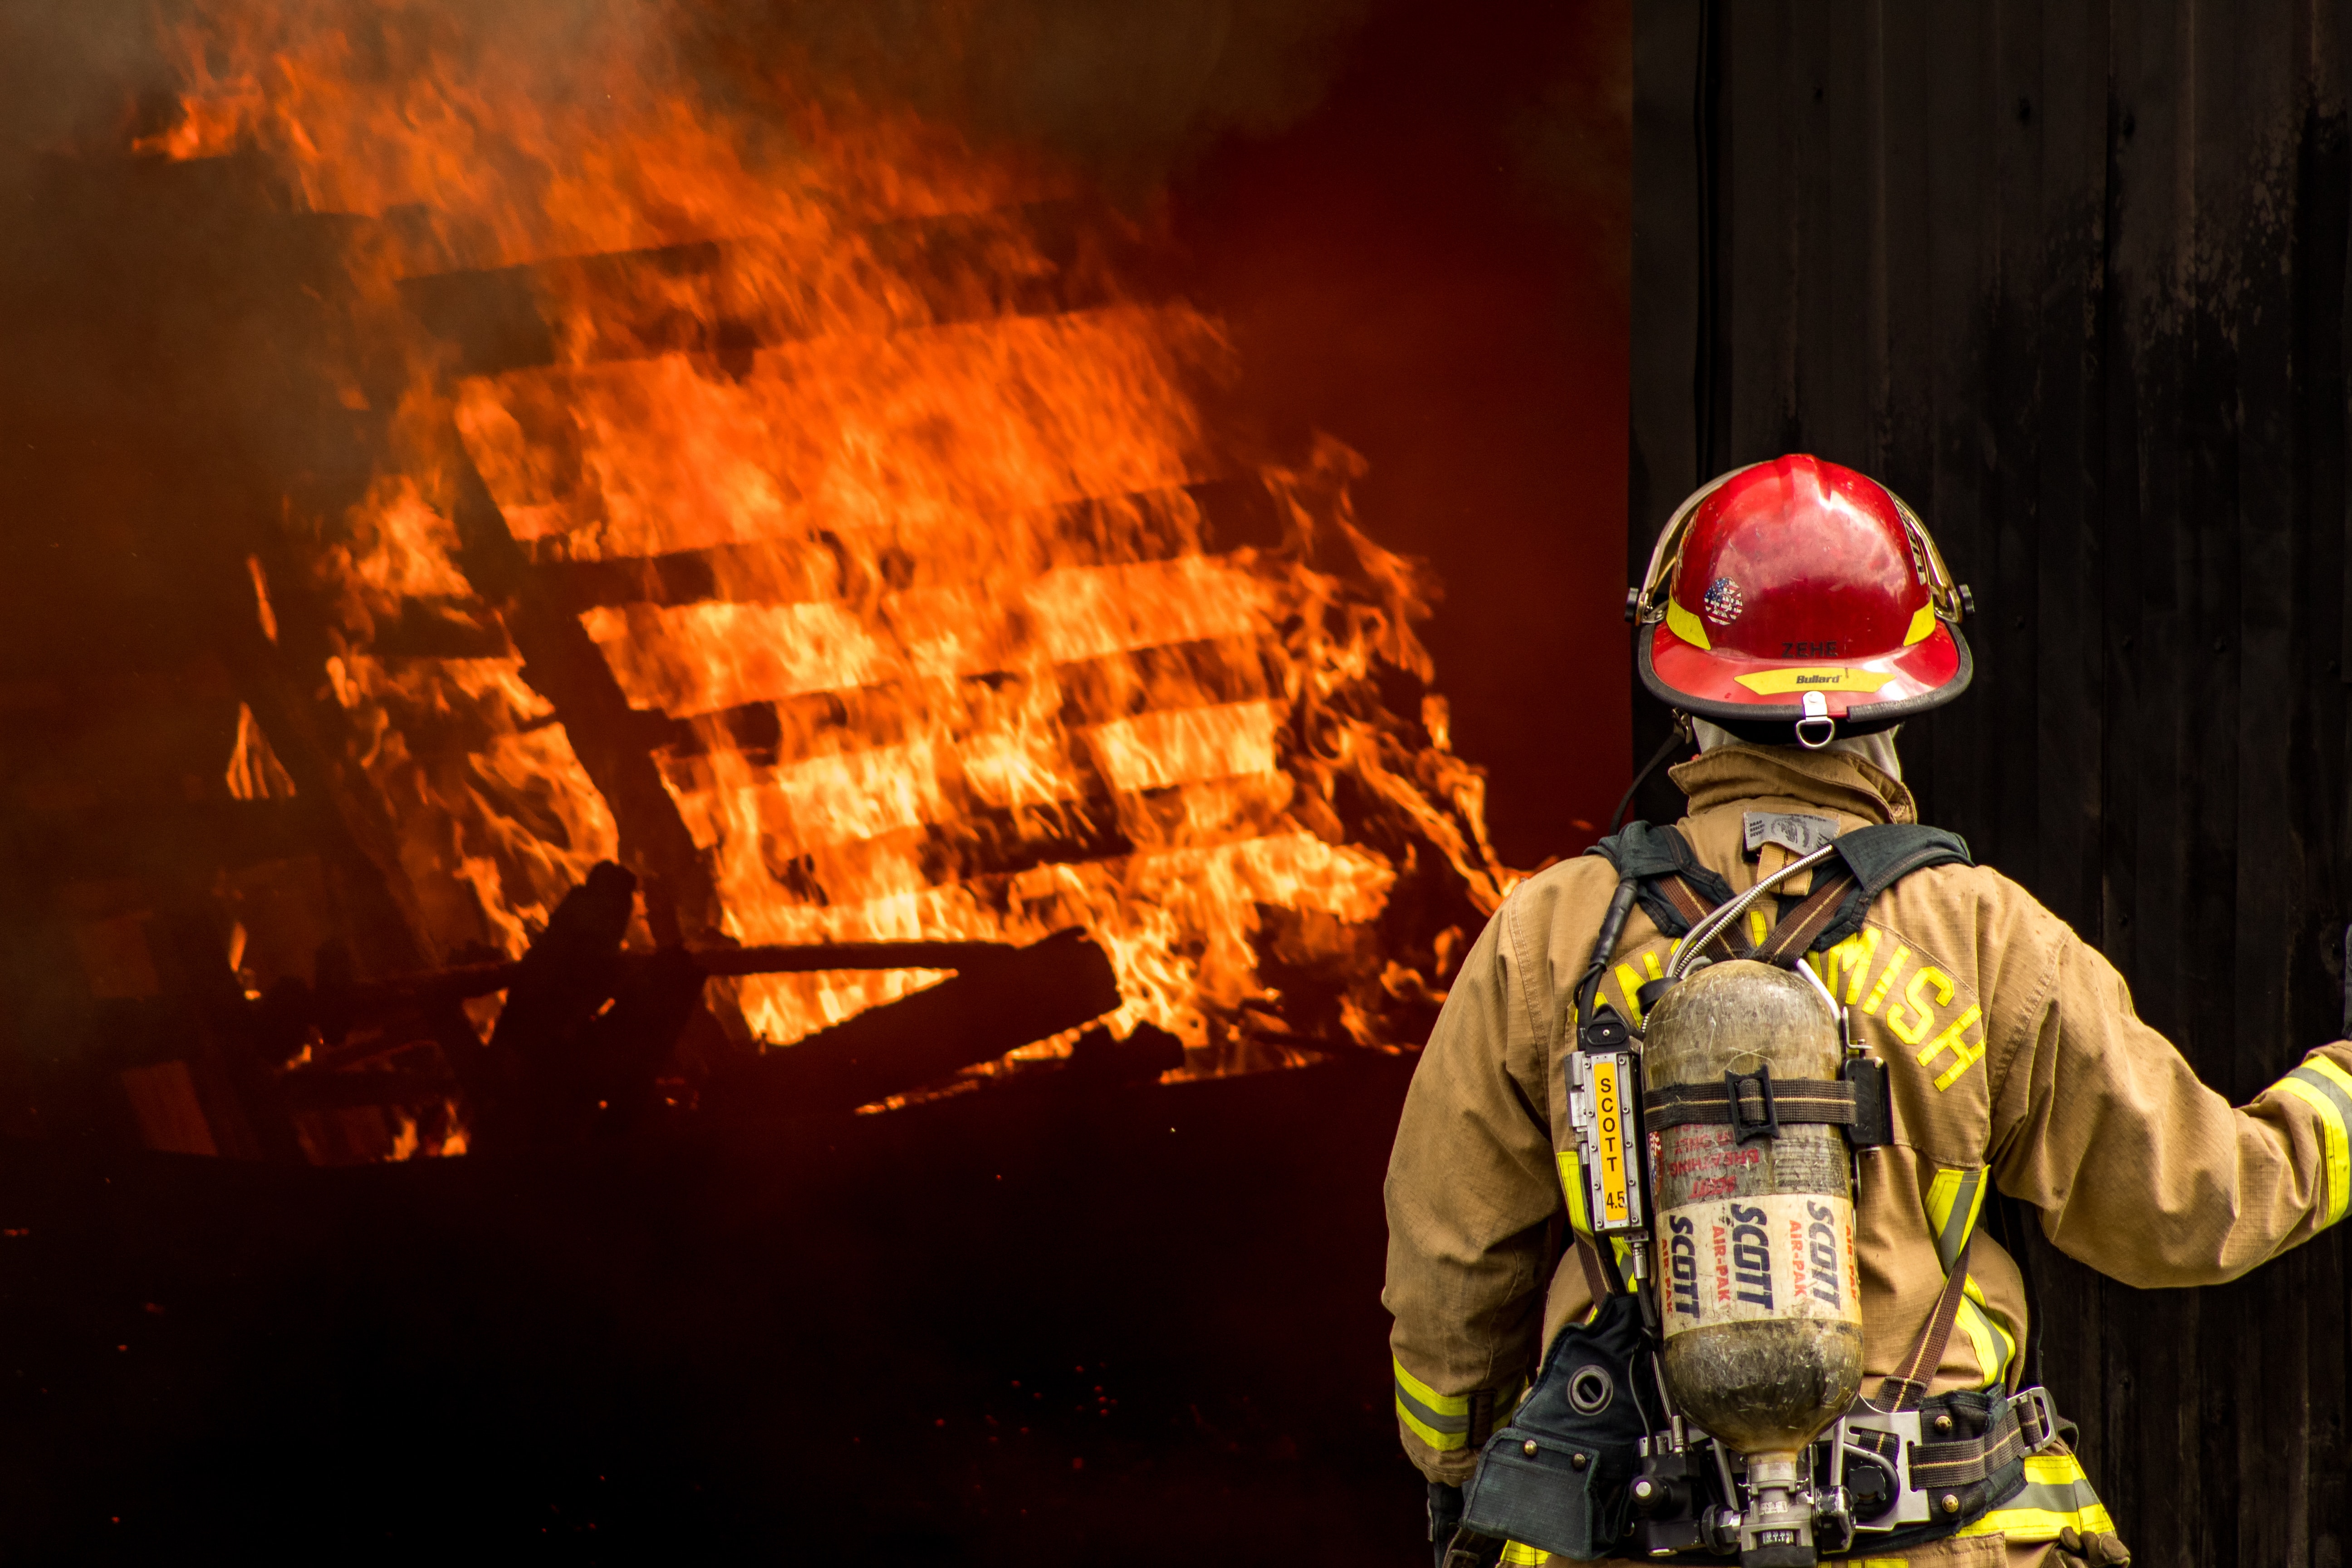 Jakie są różnice w wyposażeniu strażaków pożarnych w różnych jednostkach (np. JRG, OSP, PSP)?